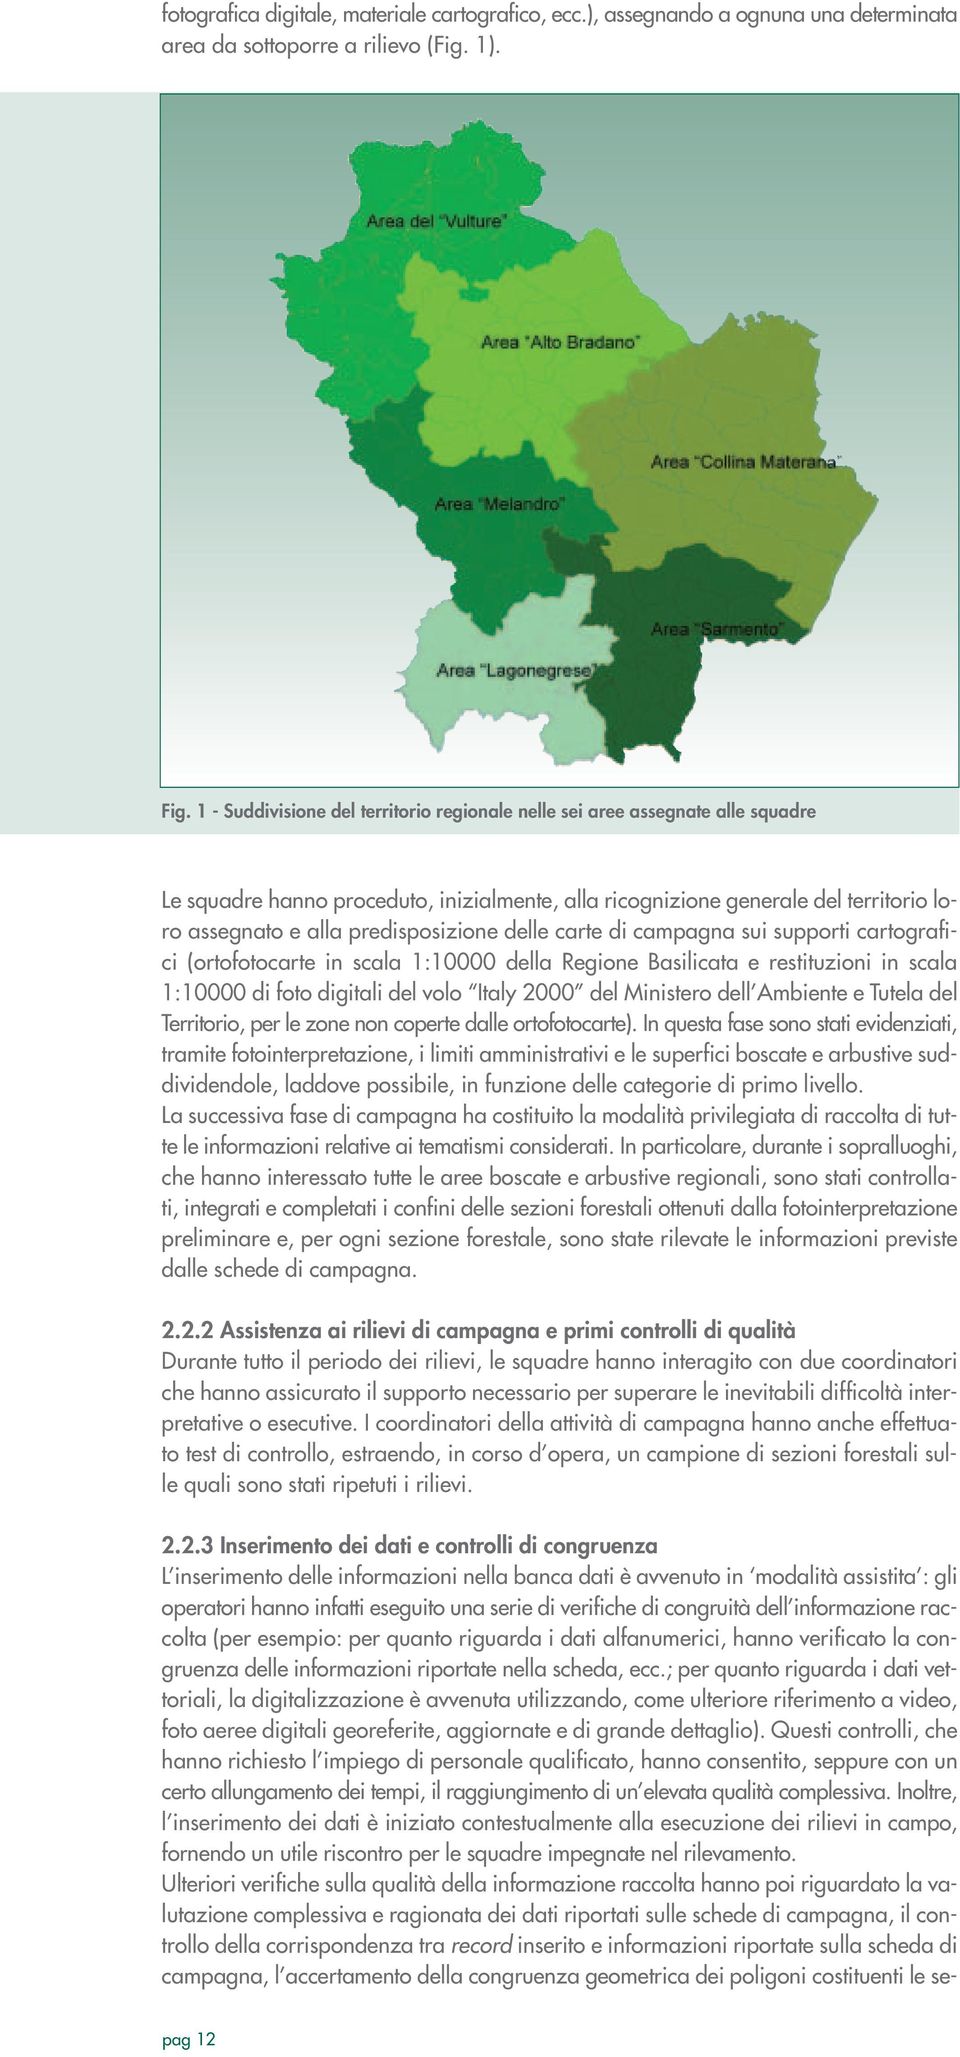 predisposizione delle carte di campagna sui supporti cartografici (ortofotocarte in scala 1:10000 della Regione Basilicata e restituzioni in scala 1:10000 di foto digitali del volo Italy 2000 del